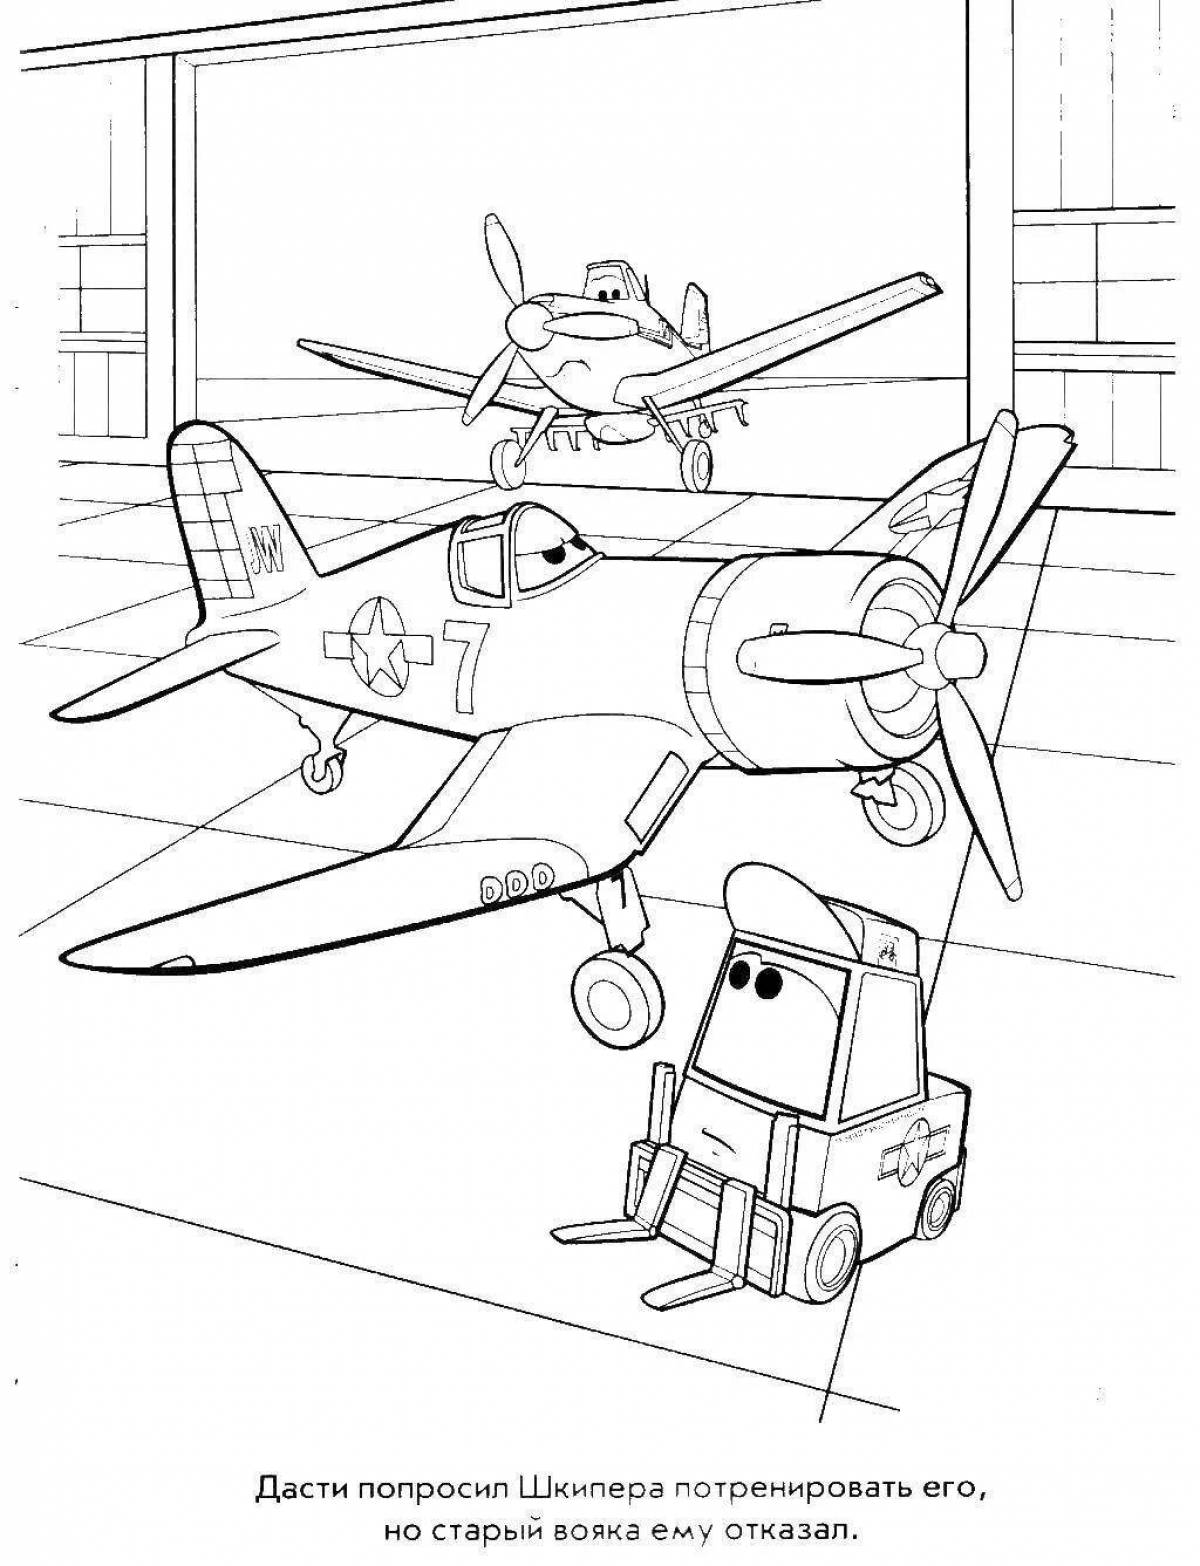 Раскраска Дасти на дозаправке, скачать и распечатать раскраску раздела Самолеты мультфильм